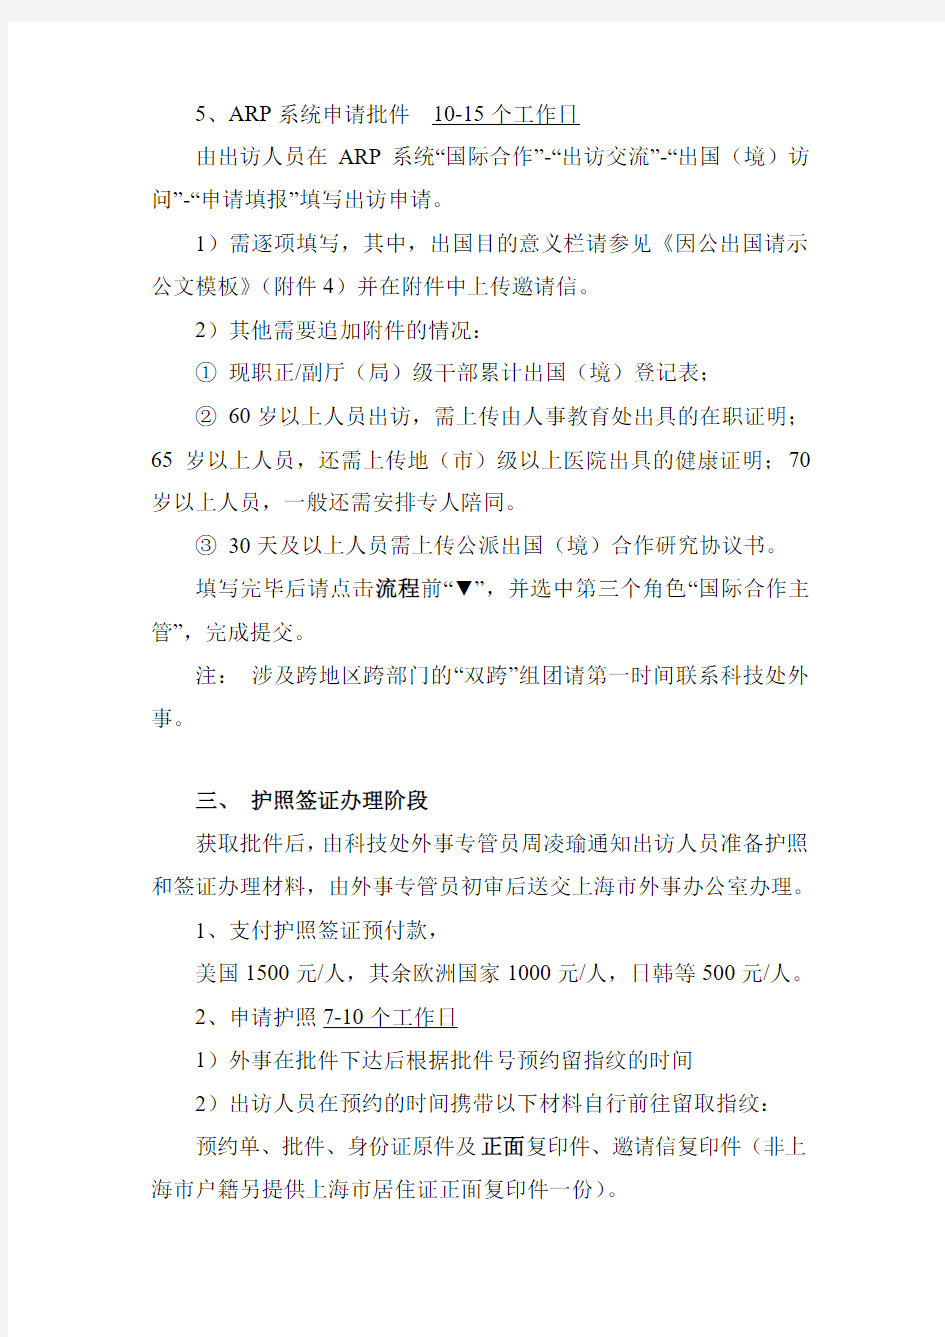 上海天文台因公出国(境)办理流程及表格样表